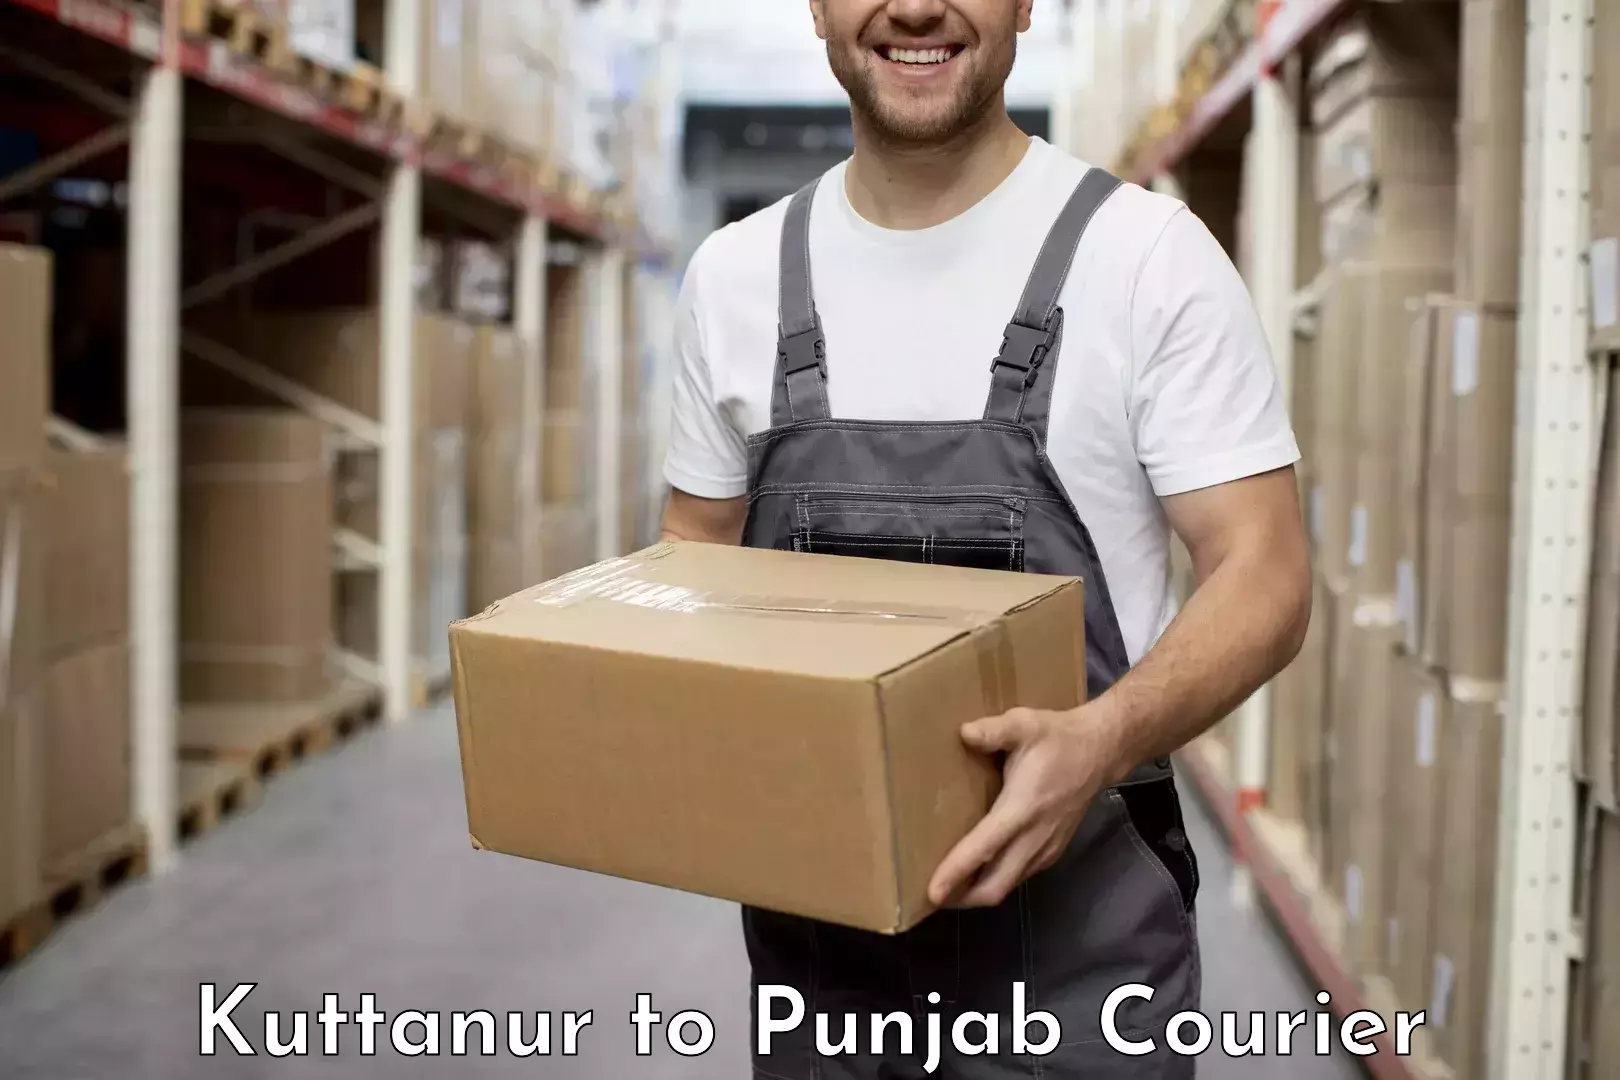 Customer-oriented courier services Kuttanur to Gurdaspur